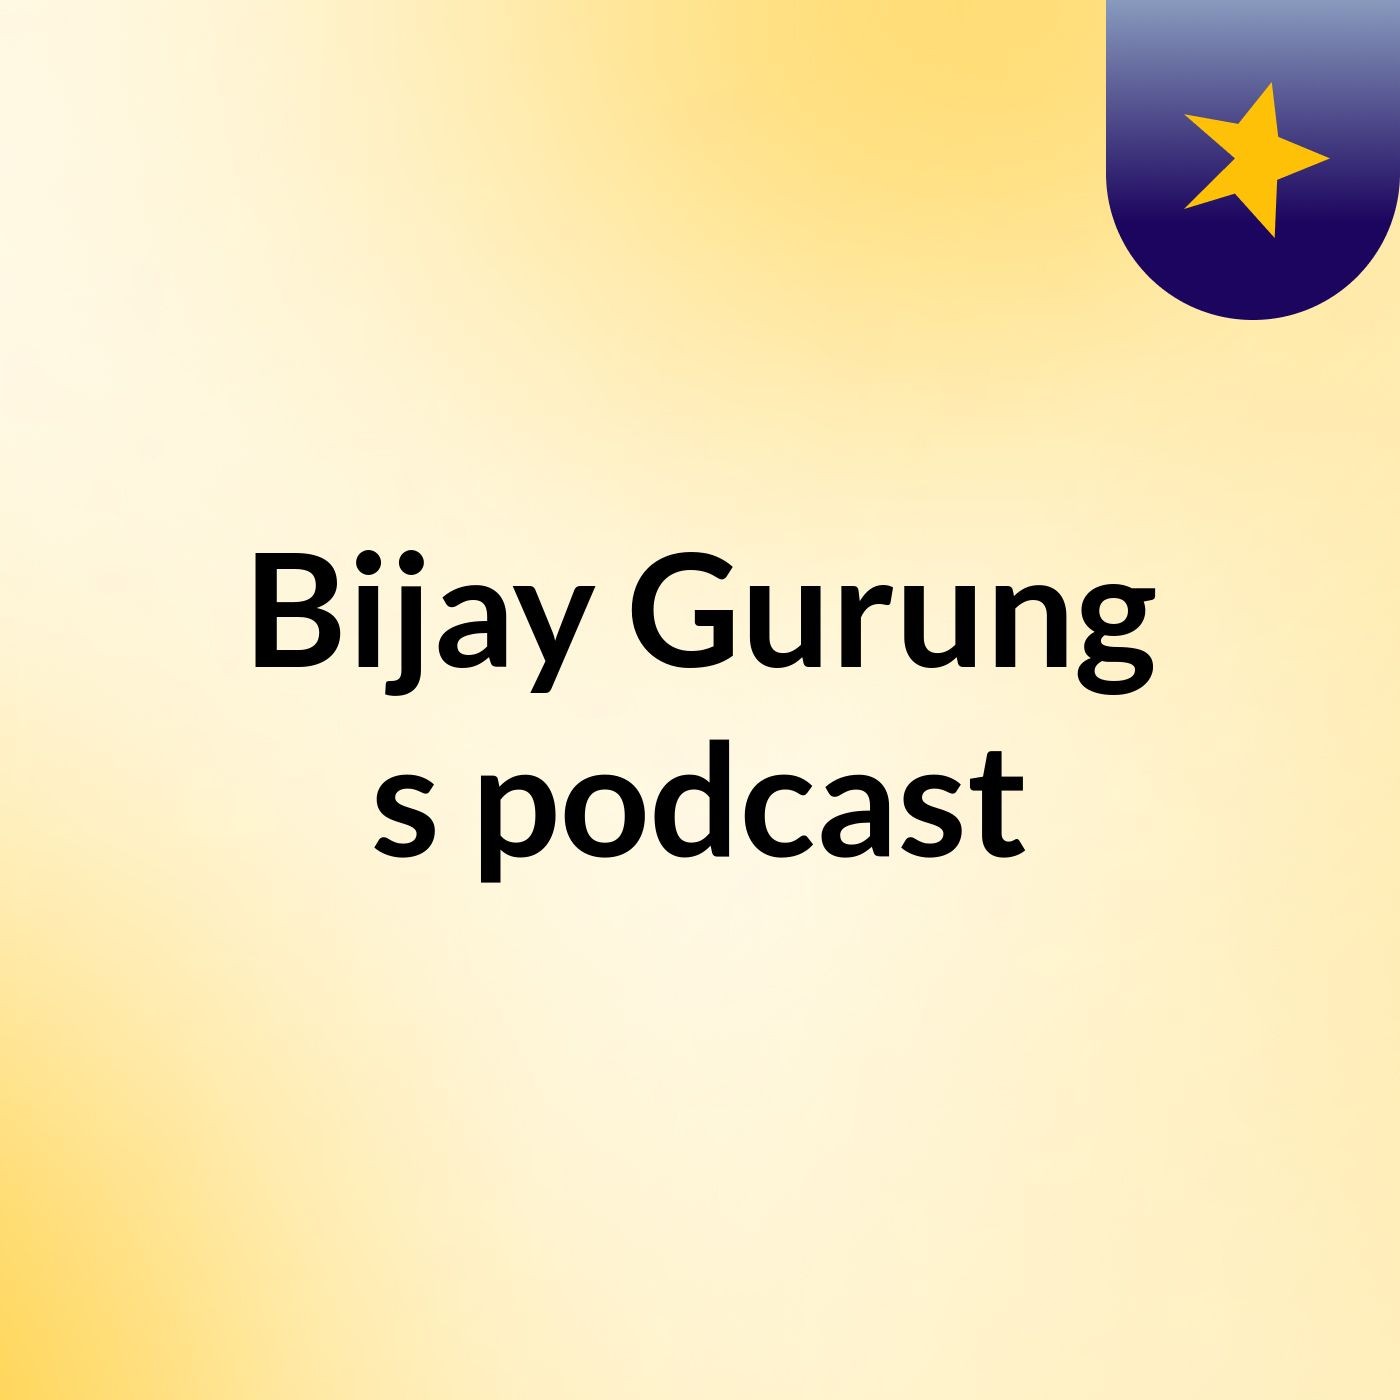 Episode 3 - Bijay Gurung's podcast